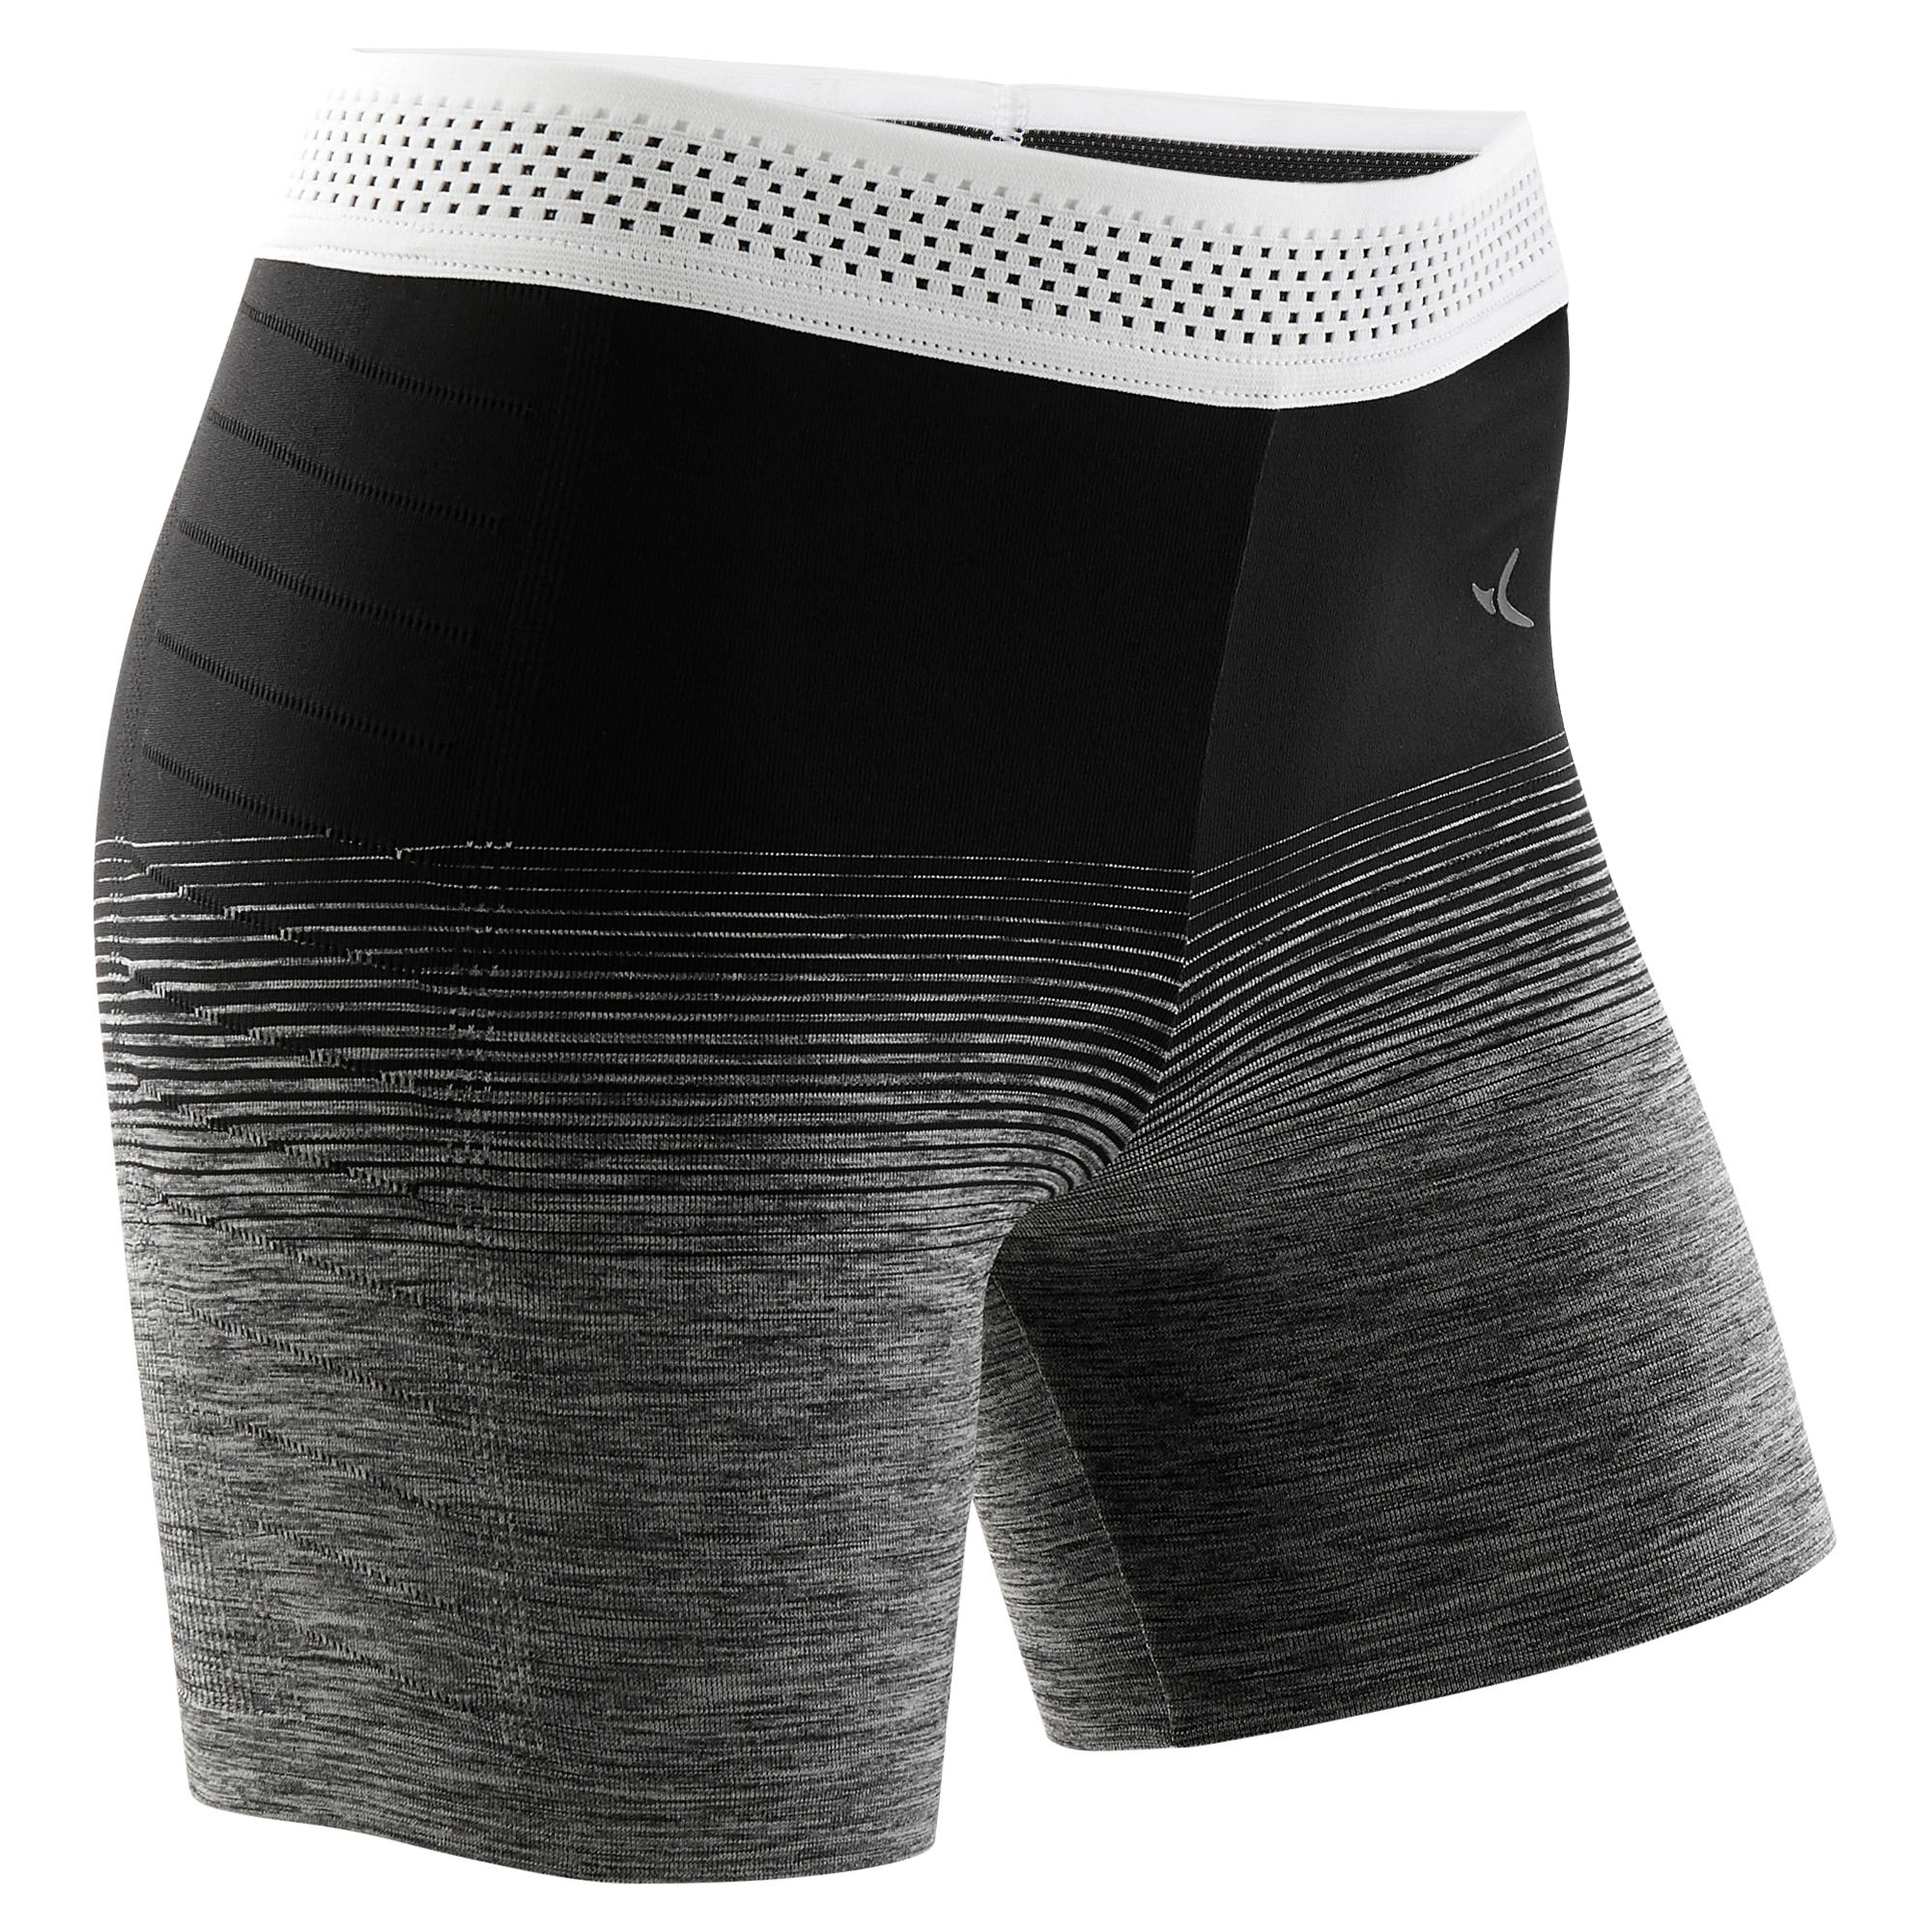 Pantalon scurt S900 educație fizică fără cusături negru-alb fete decathlon.ro